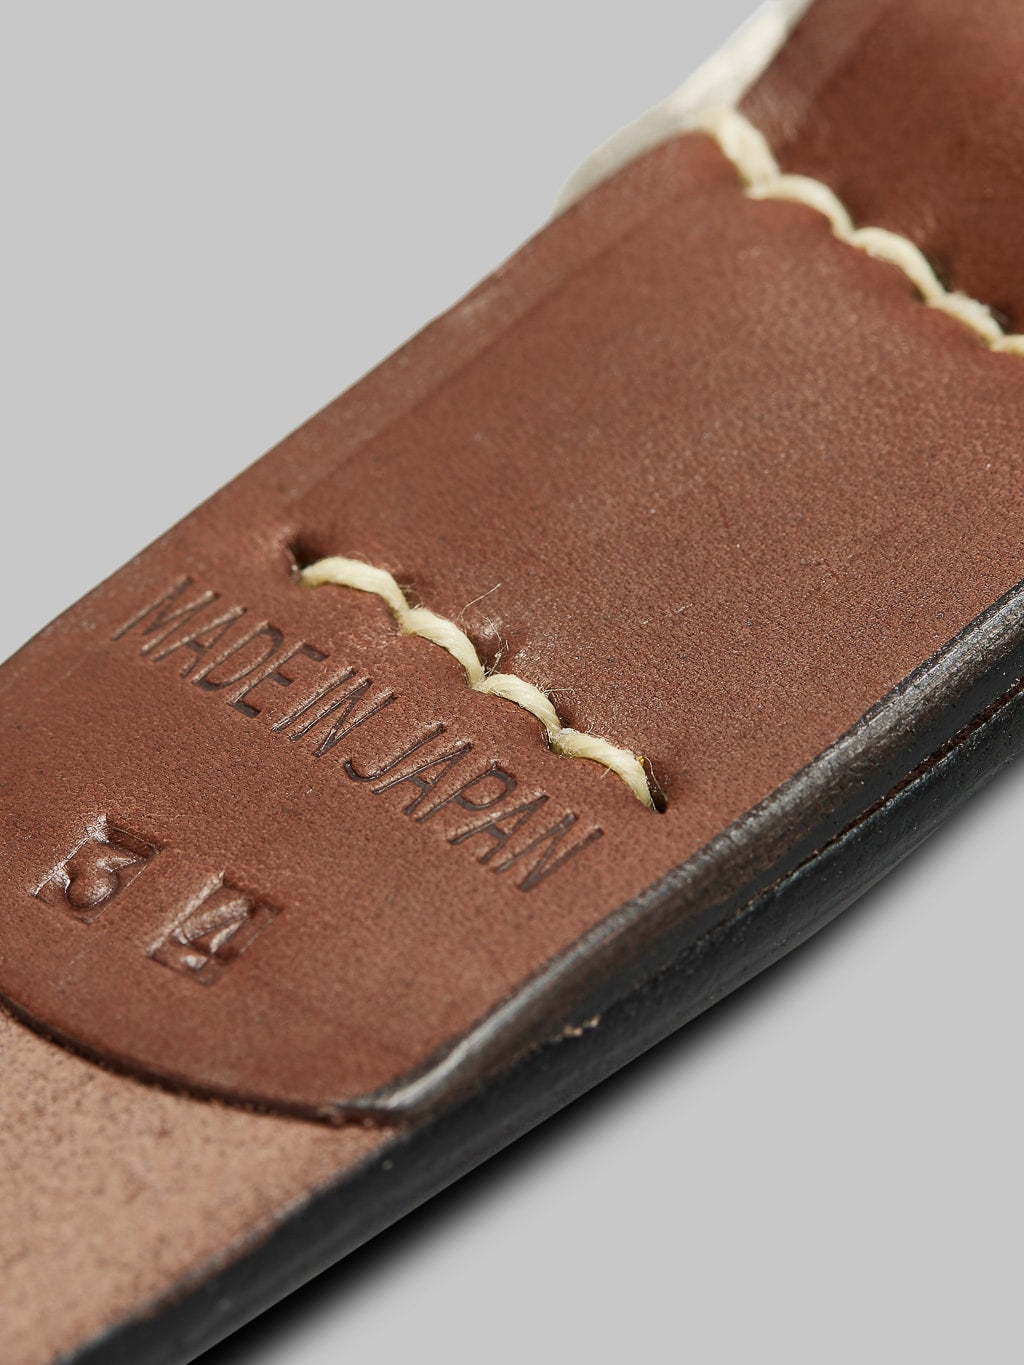 Sugar Cane leather garrison belt brown white thread stitching